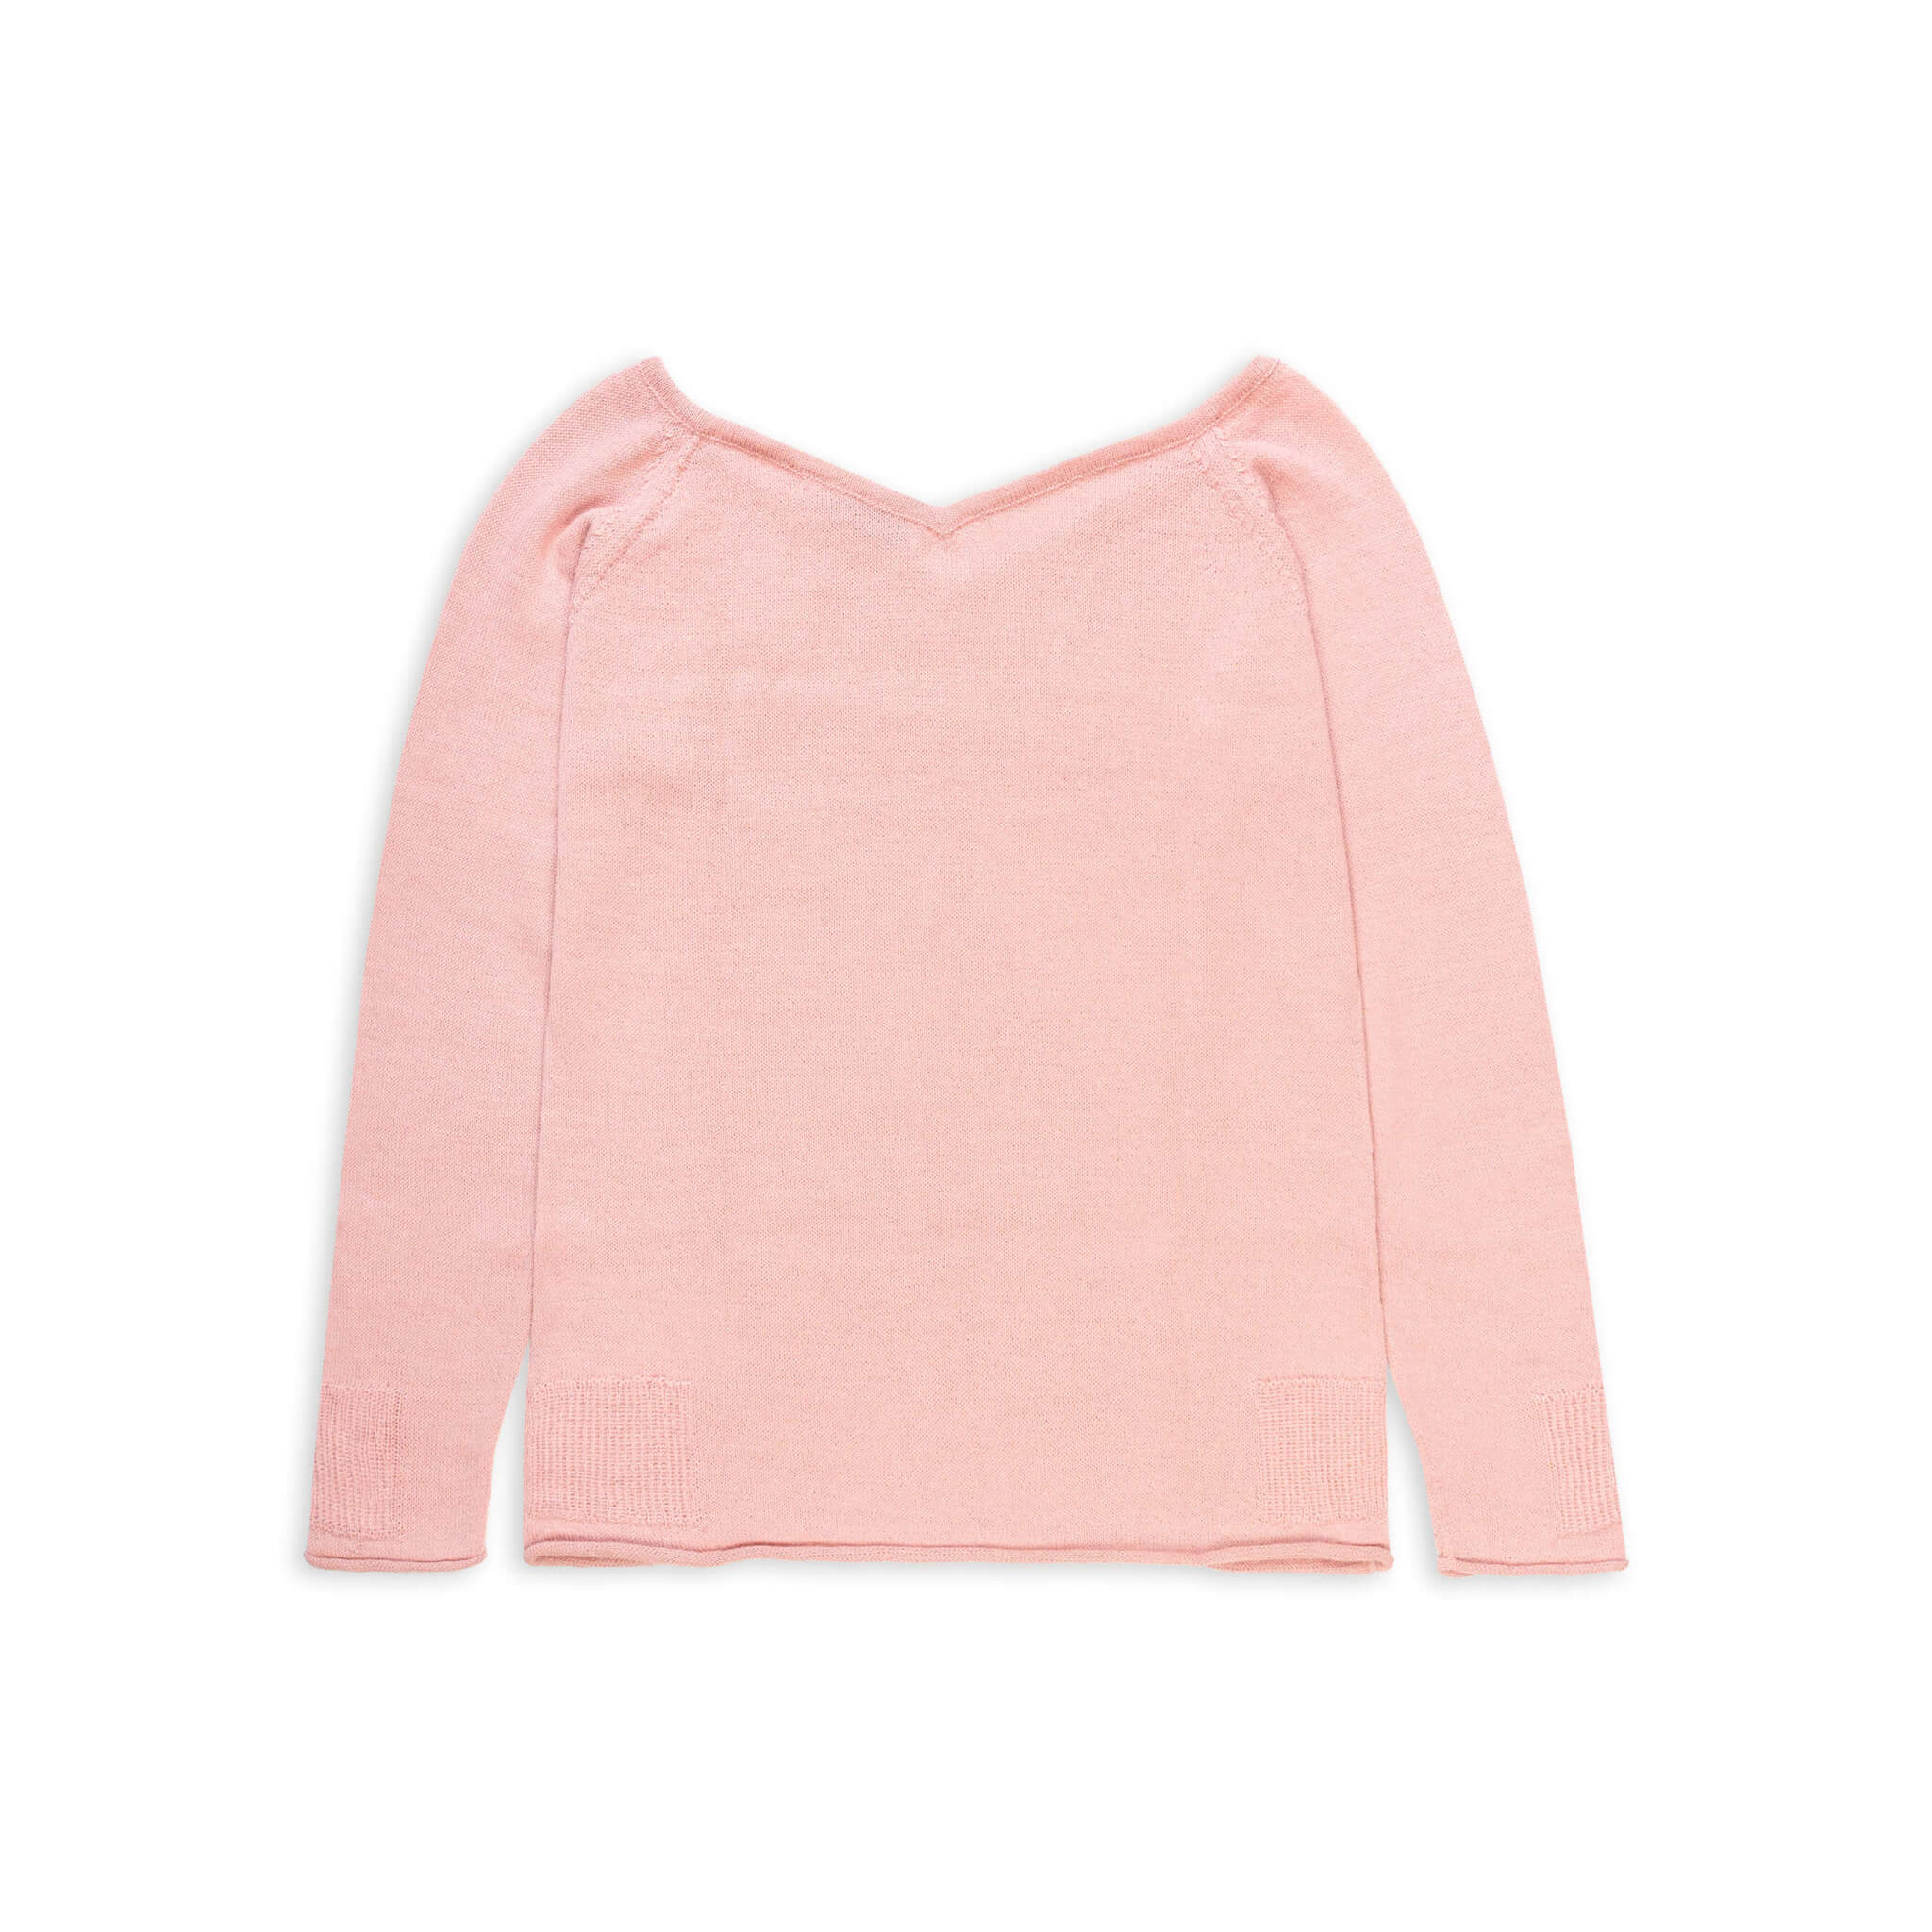 MIA Alpaka Pullover für Damen von Alpakin in rosa von hinten